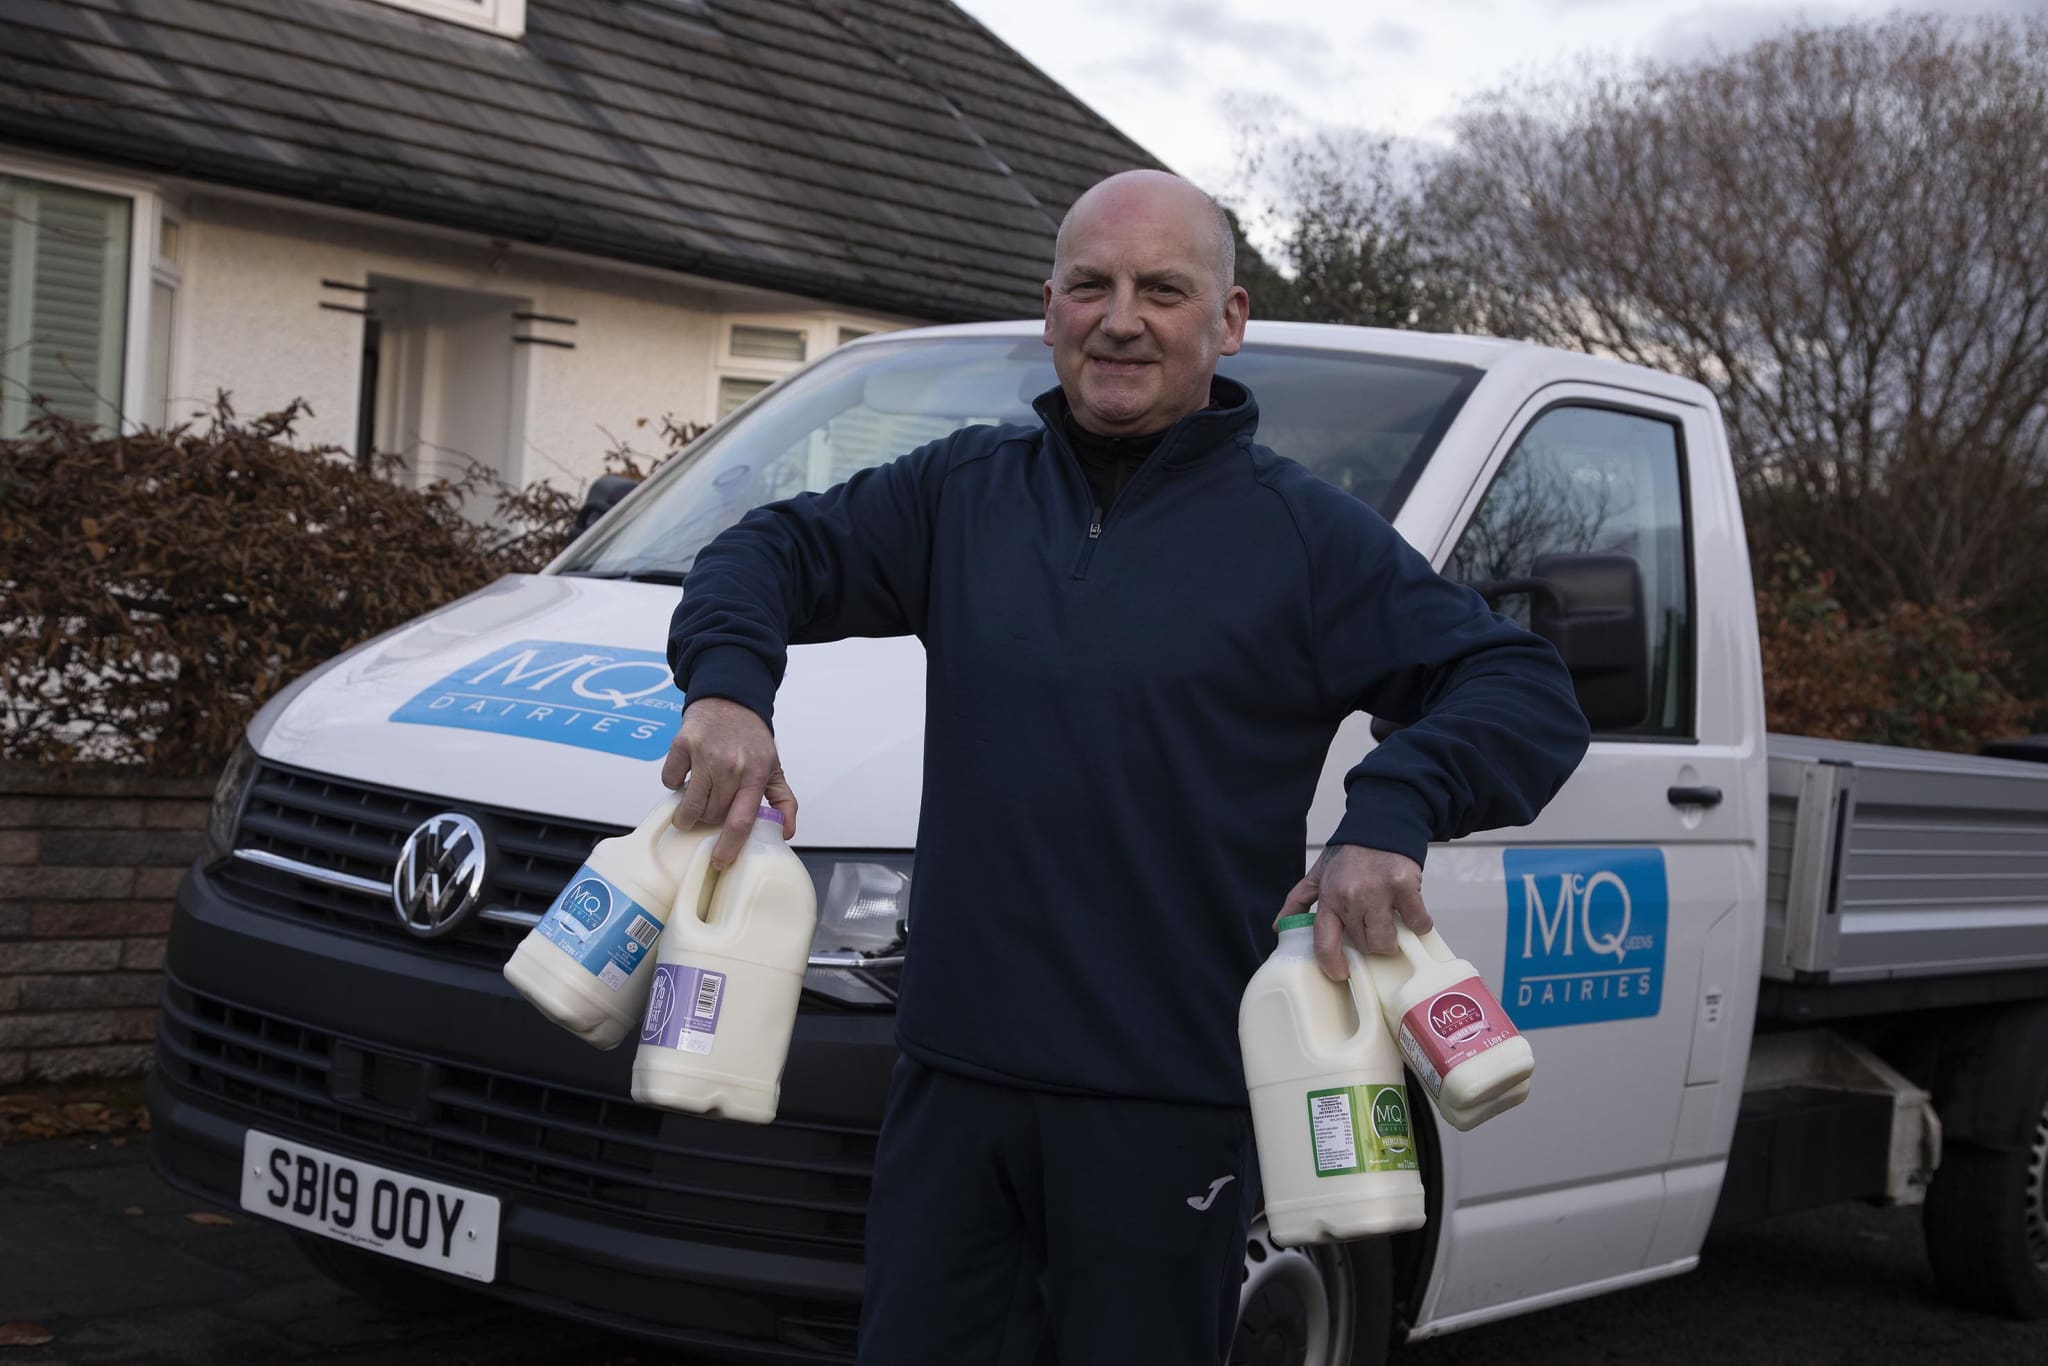 modern Milkman Edinburgh milk delivered